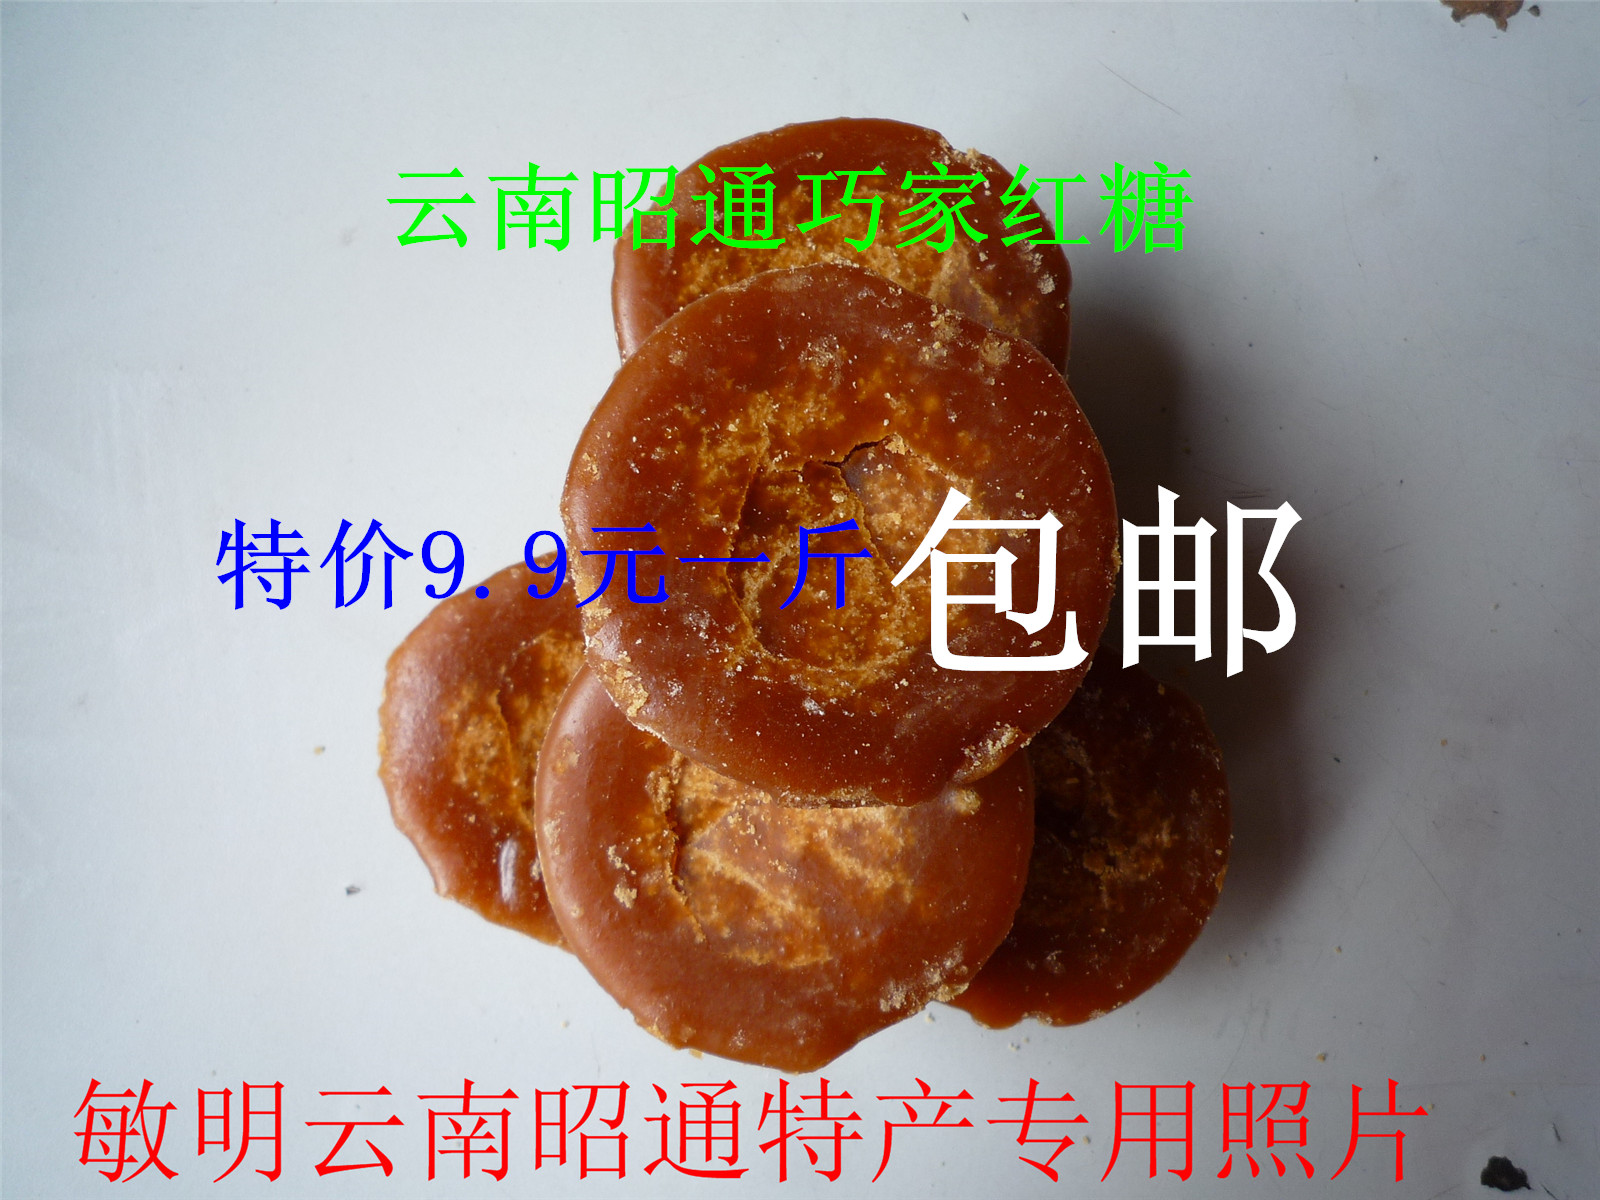 云南昭通特产巧家红糖纯原汁甘蔗红糖小碗土红糖9.9元一斤包邮